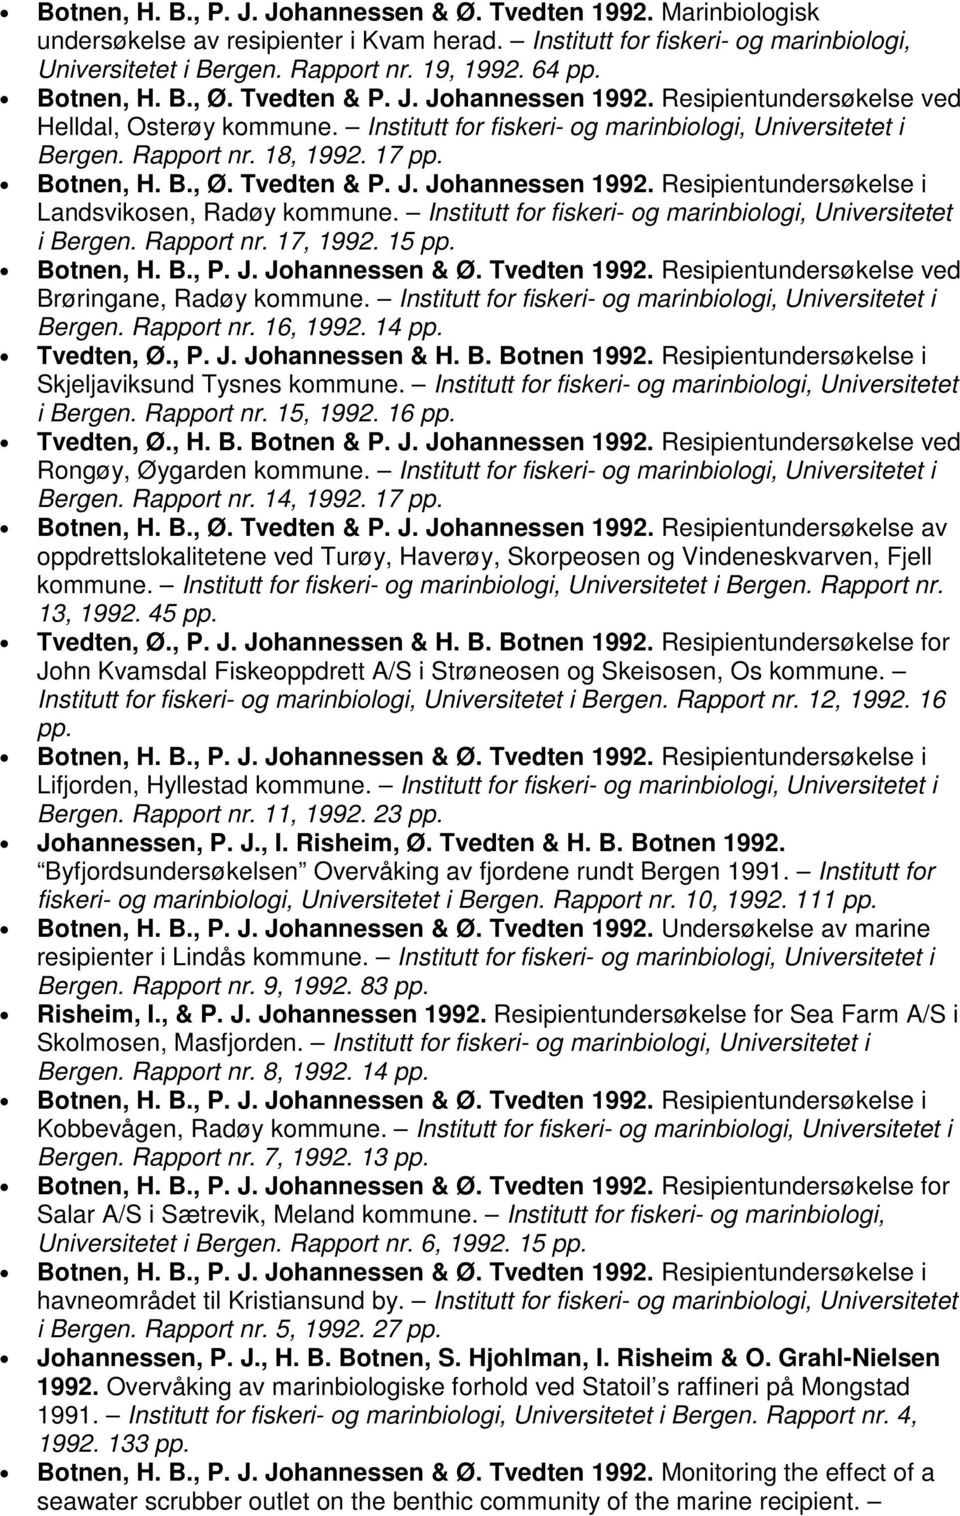 17 Botnen, H. B., Ø. Tvedten & P. J. Johannessen 1992. Resipientundersøkelse i Landsvikosen, Radøy kommune. Institutt for fiskeri- og marinbiologi, Universitetet i Bergen. Rapport nr. 17, 1992.